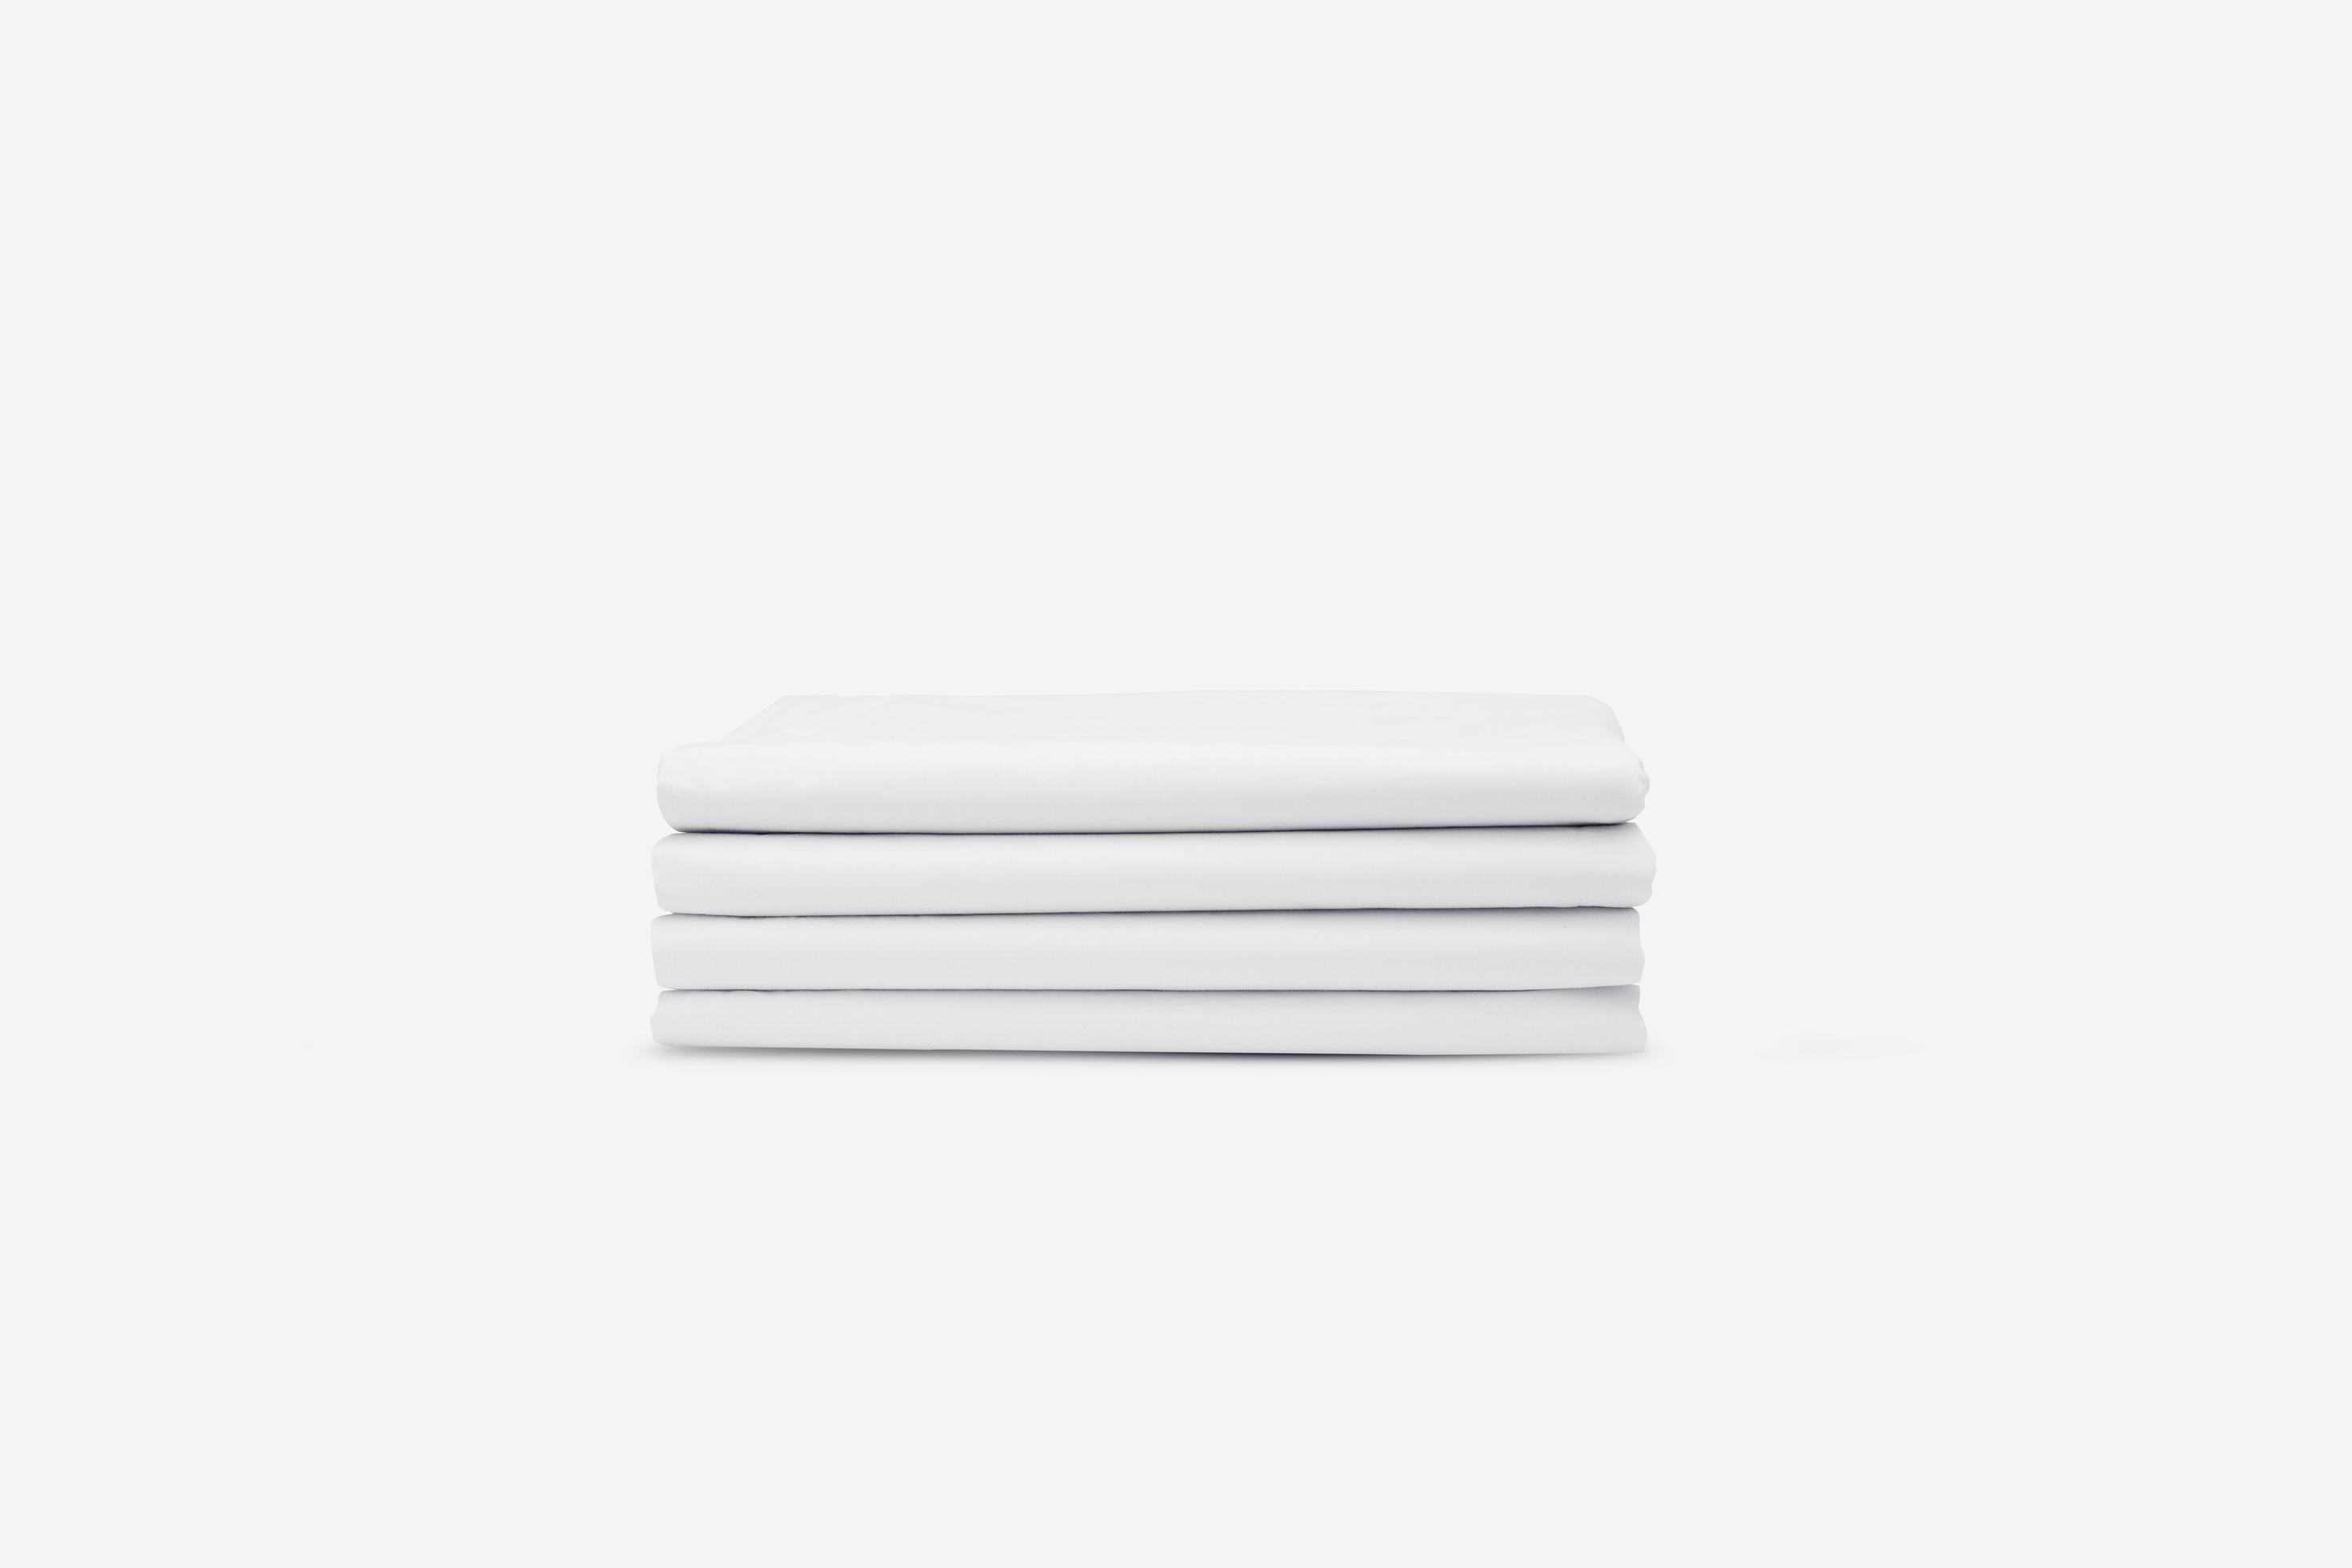 bossen Luxe Doelwit een nette stapel opgevouwen witte stoffen. goed ontworpen witte stoffen doek  concept. textieltextuurmodel voor creatief ontwerpvoorbeeld. 4691158  Stockfoto